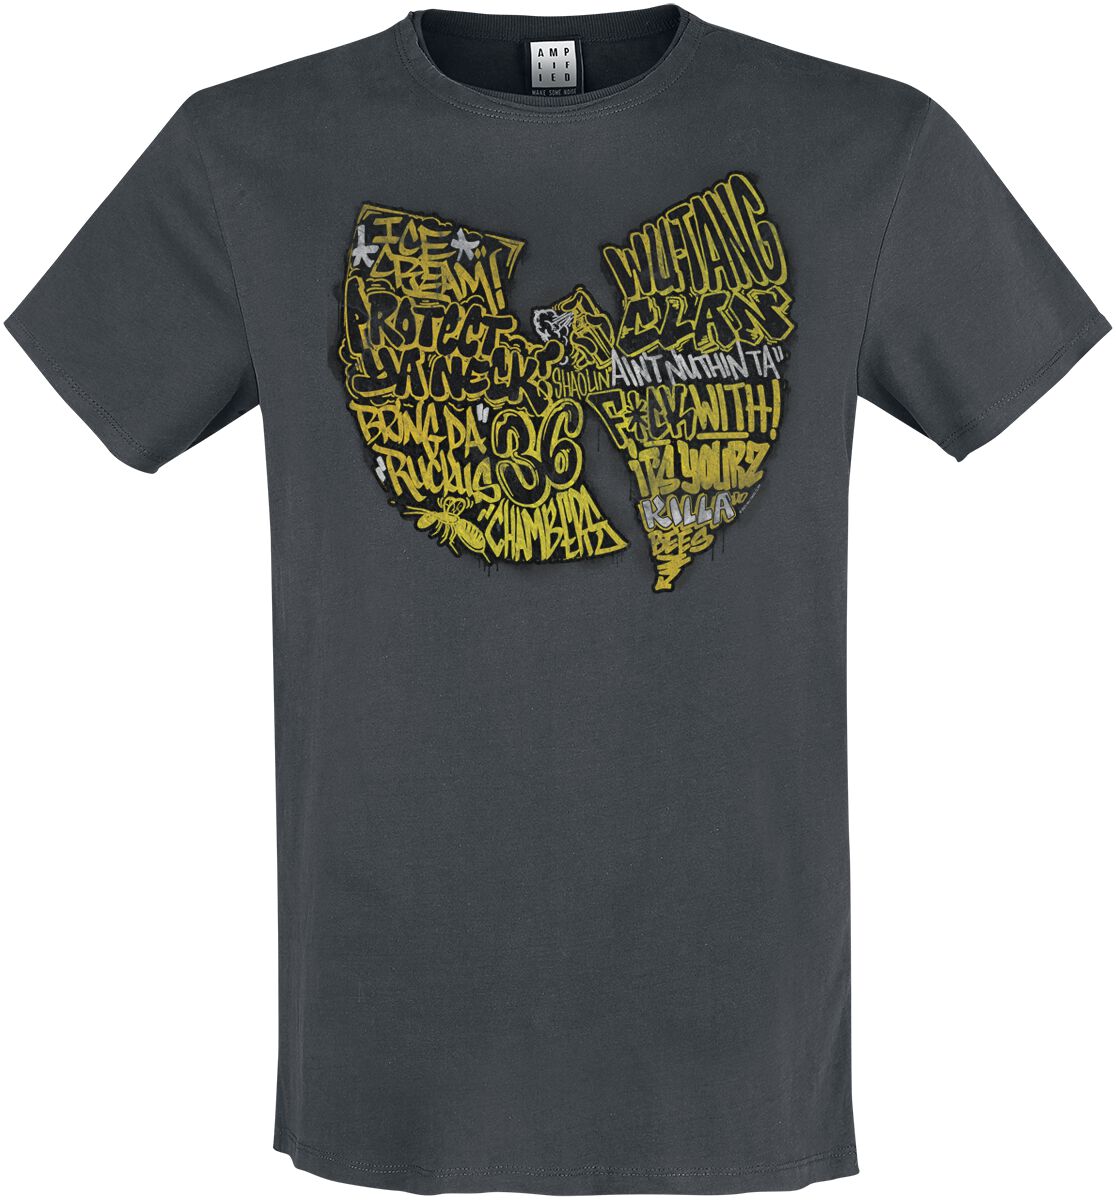 Wu-Tang Clan T-Shirt - Amplified Collection - Graffiti Logo - S bis 3XL - für Männer - Größe 3XL - charcoal  - Lizenziertes Merchandise!